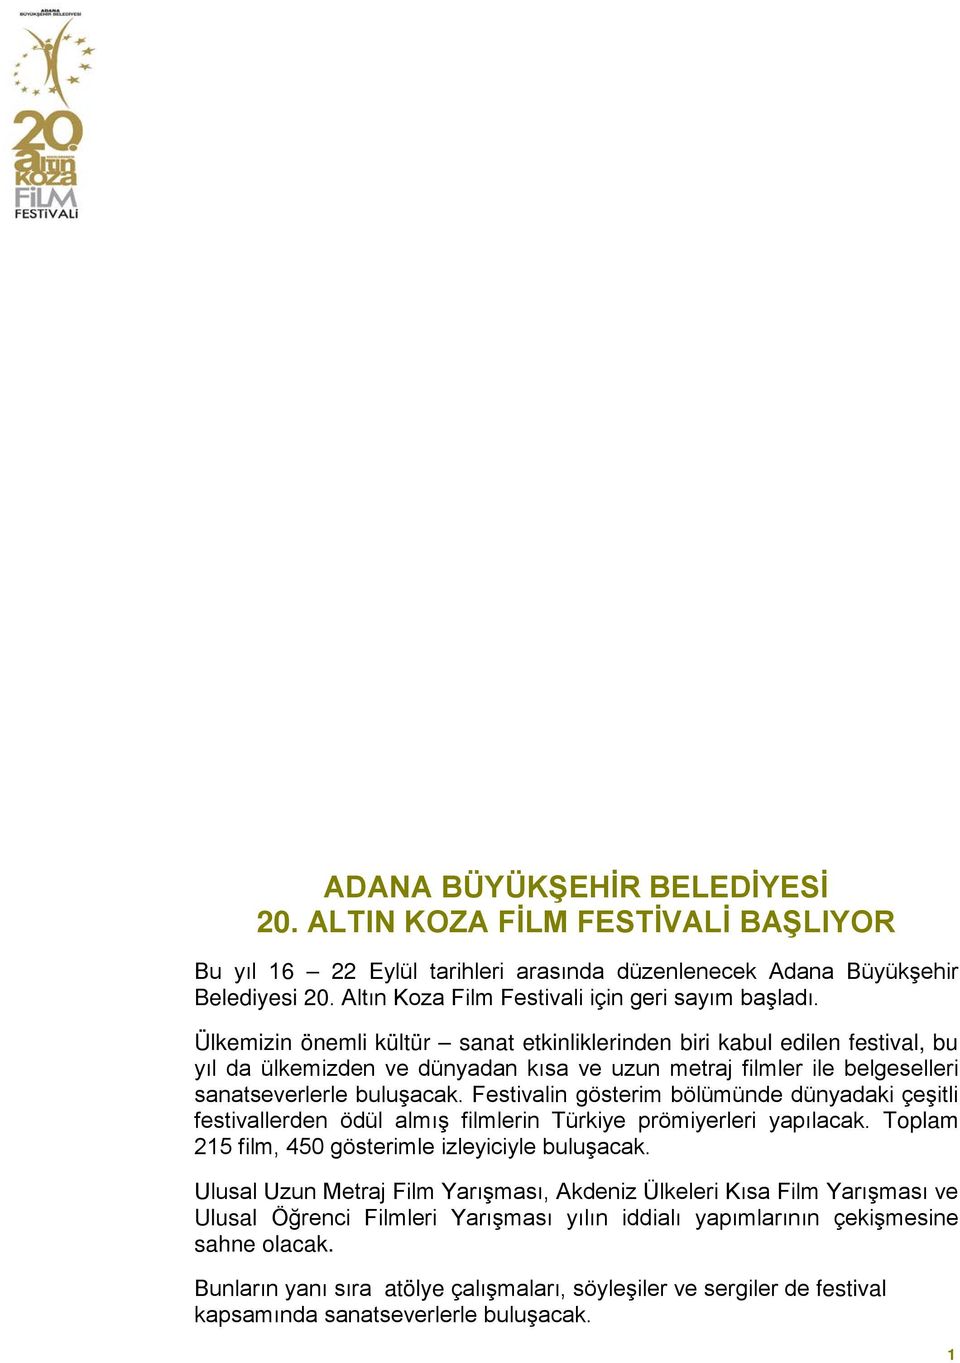 Festivalin gösterim bölümünde dünyadaki çeşitli festivallerden ödül almış filmlerin Türkiye prömiyerleri yapılacak. Toplam 215 film, 450 gösterimle izleyiciyle buluşacak.